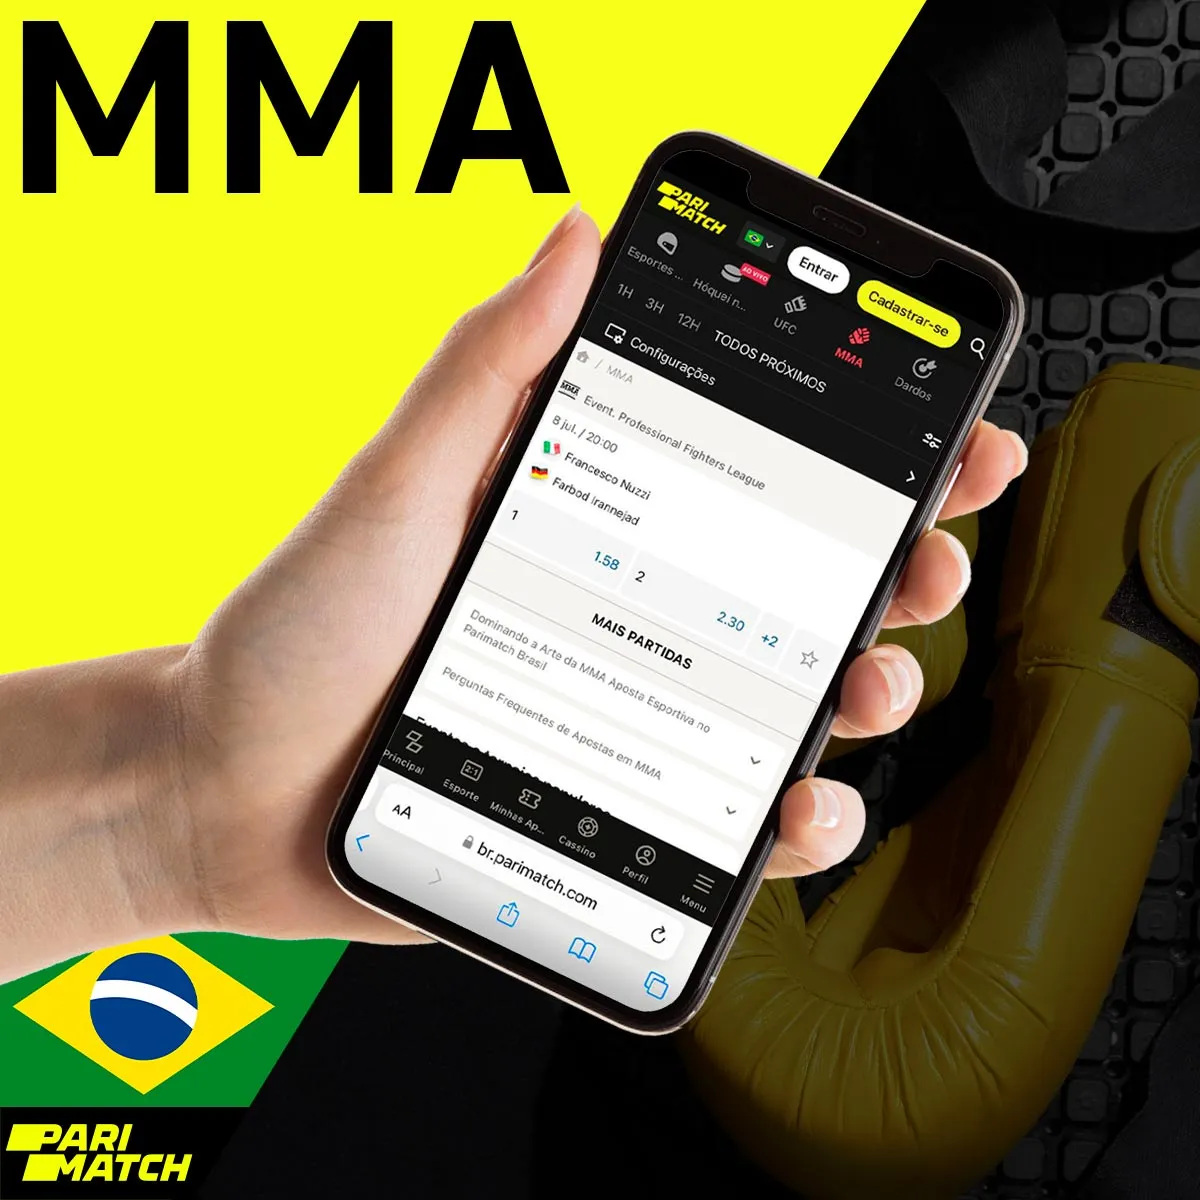 Apostas em MMA na casa de apostas Parimatch no Brasil